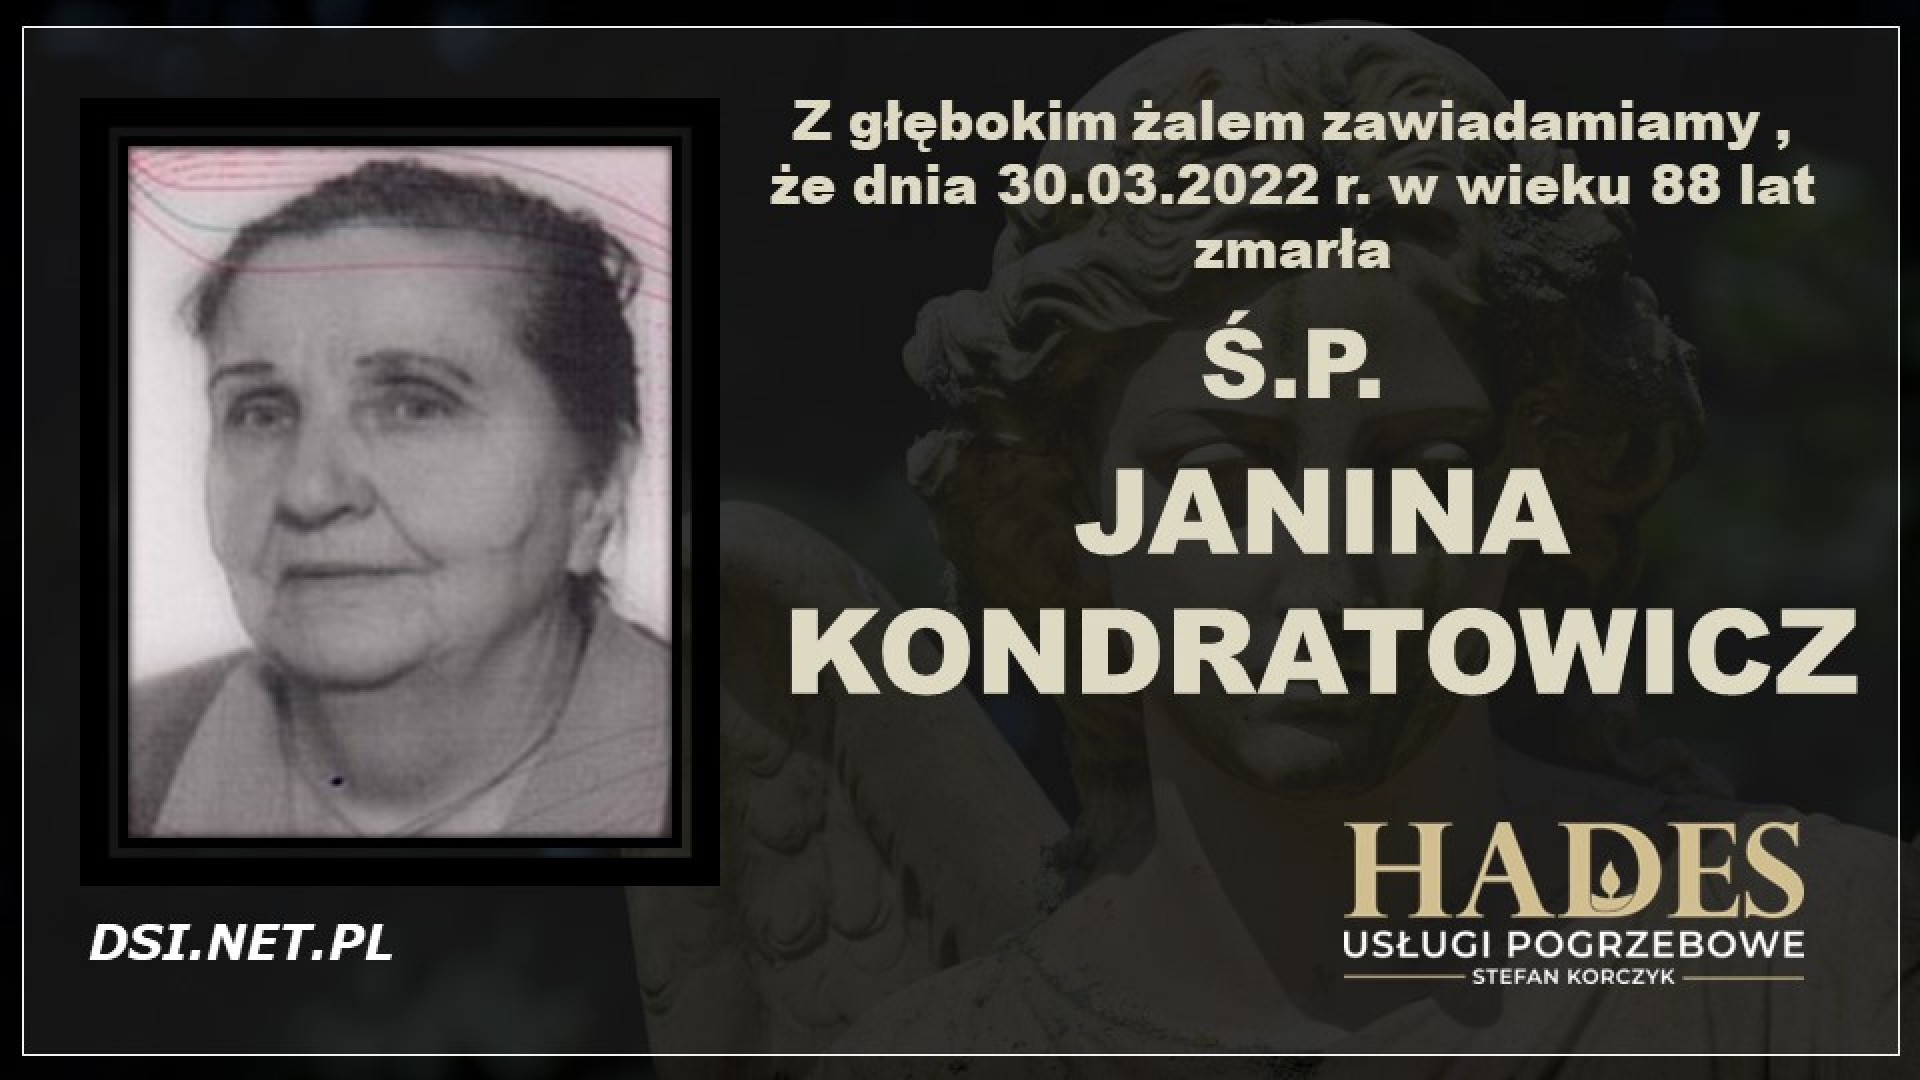 Ś.P. Janina Kondratowicz